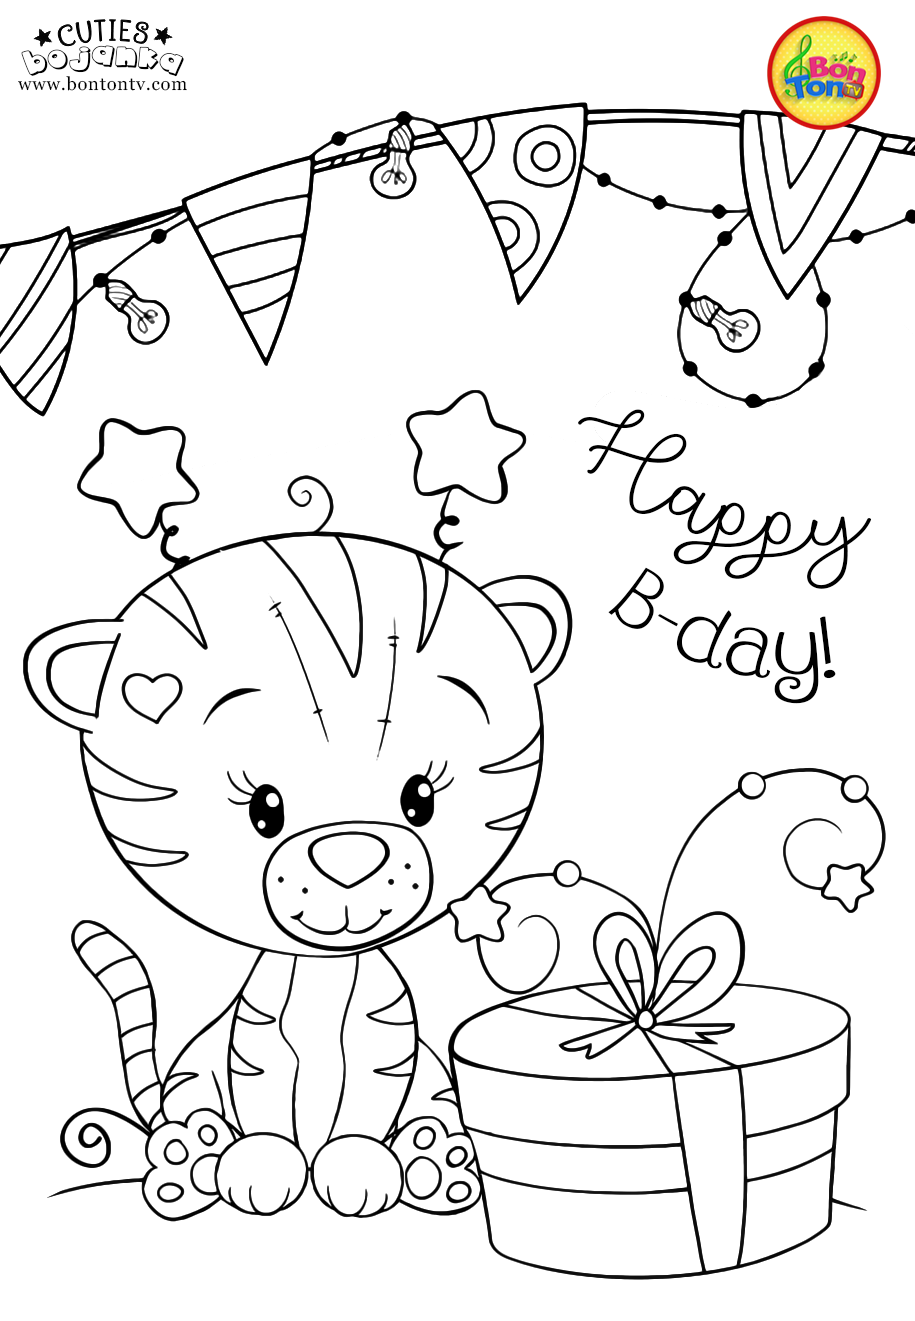 Cuties Coloring Pages For Kids Free Preschool Printables Slatkice Bojanke Cute Animal